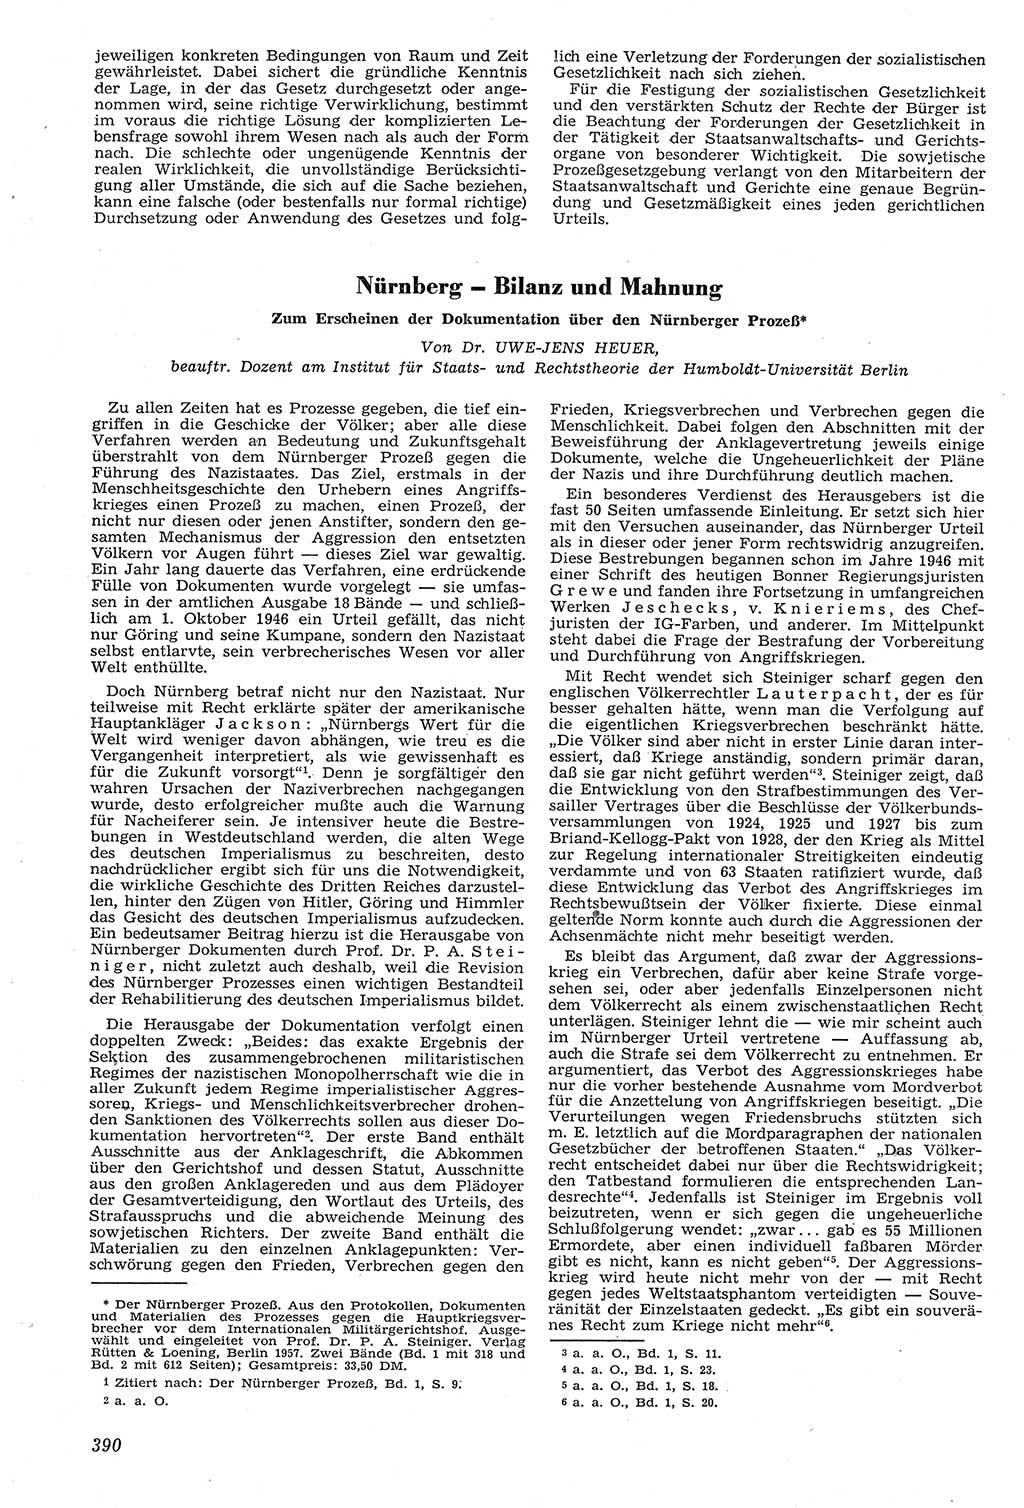 Neue Justiz (NJ), Zeitschrift für Recht und Rechtswissenschaft [Deutsche Demokratische Republik (DDR)], 11. Jahrgang 1957, Seite 390 (NJ DDR 1957, S. 390)